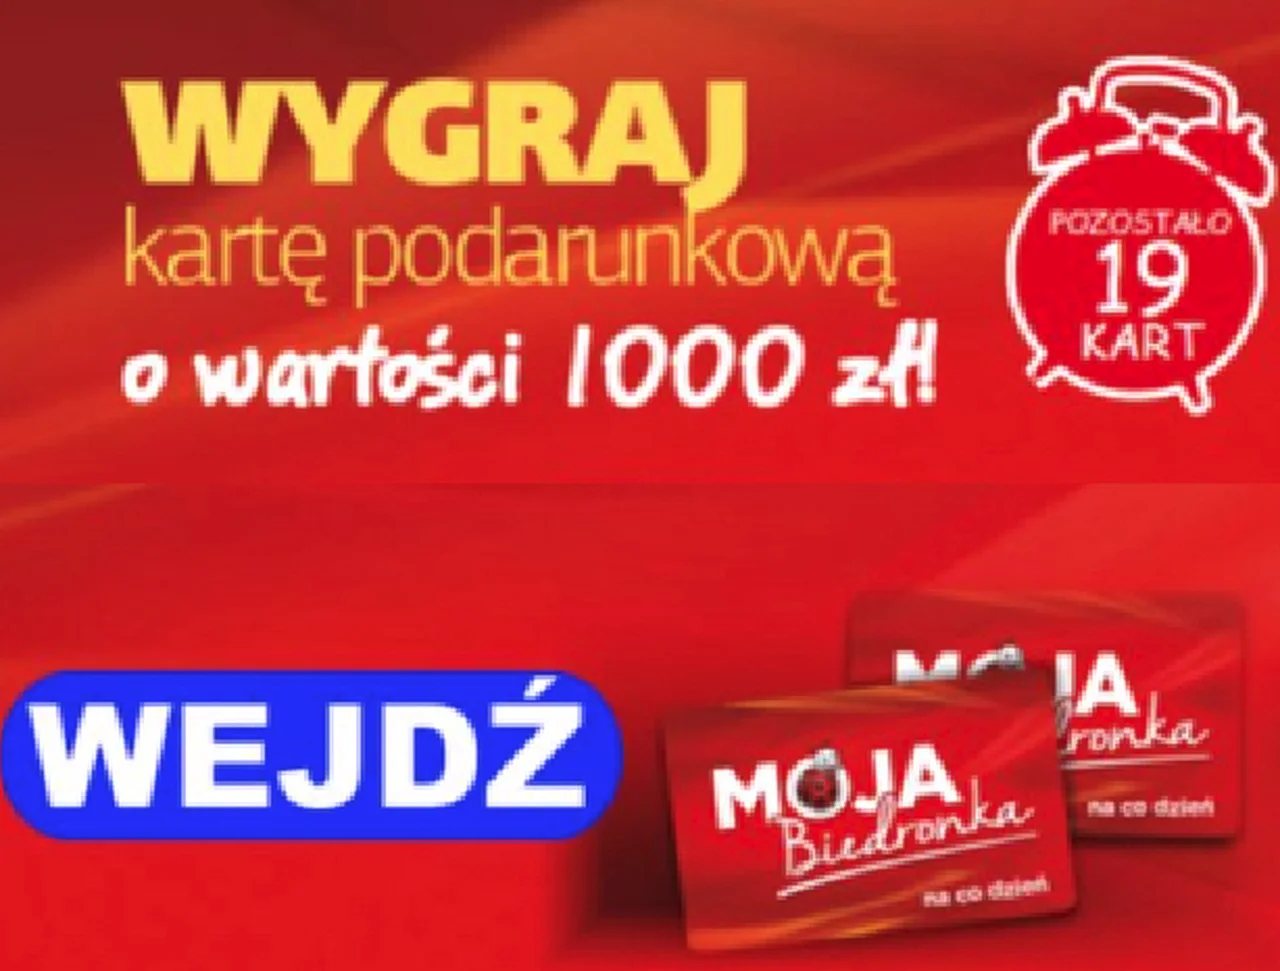 Karta z Biedronki na 1000 zł - UWAGA na oszustwo!